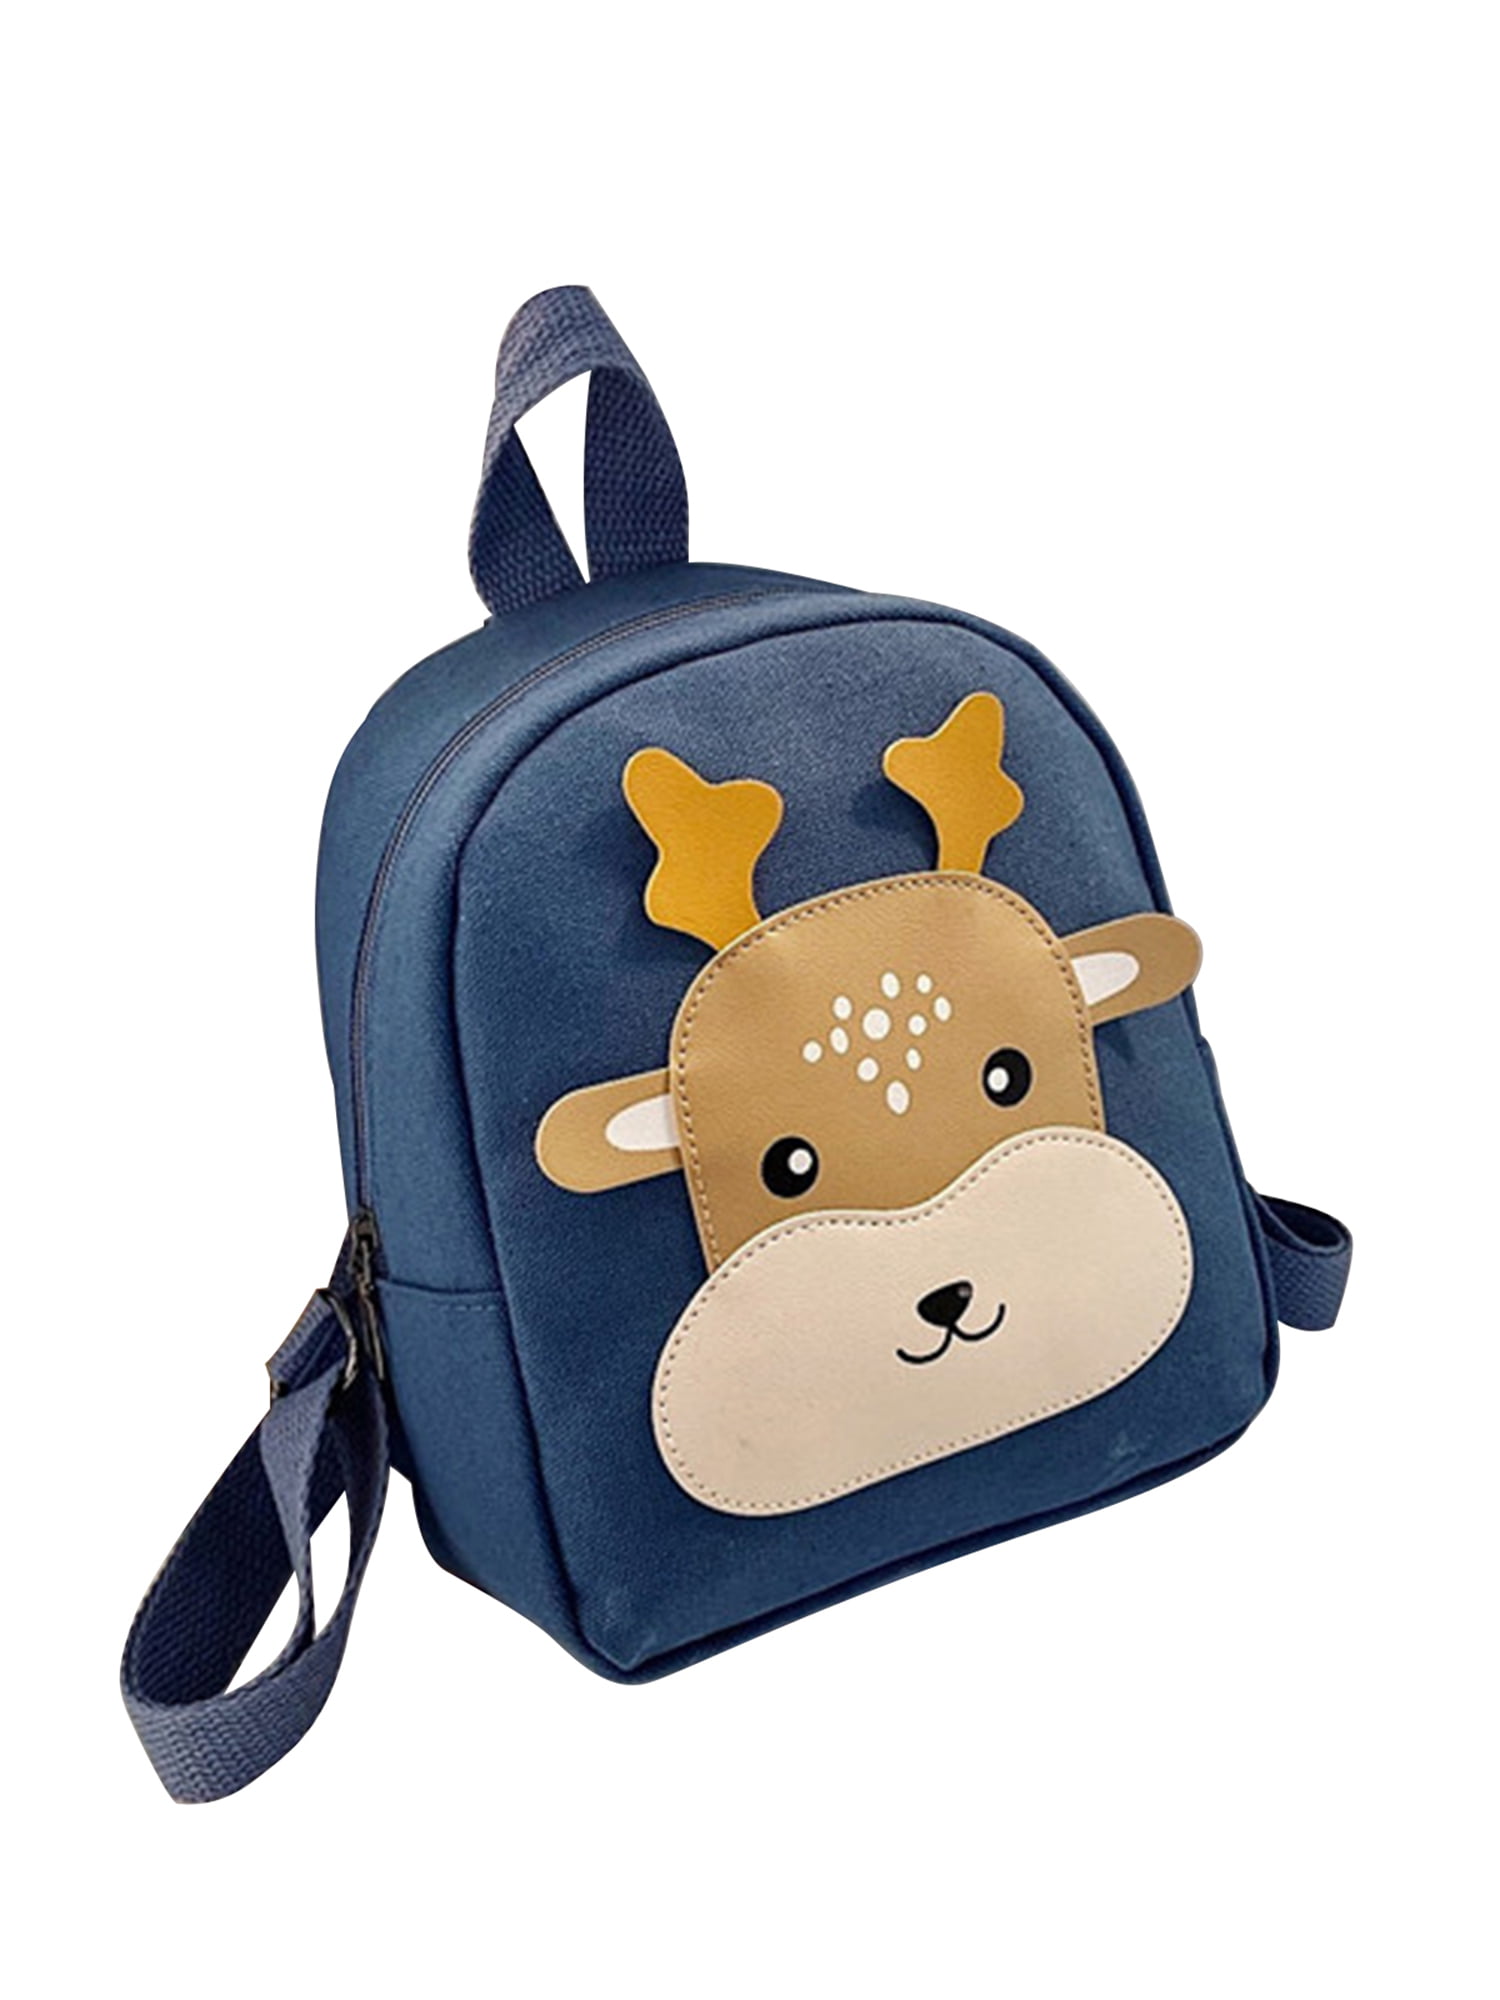 Small Toddler Kids Child Boy Girl Cartoon Backpack Shoulder Rucksack School bag 